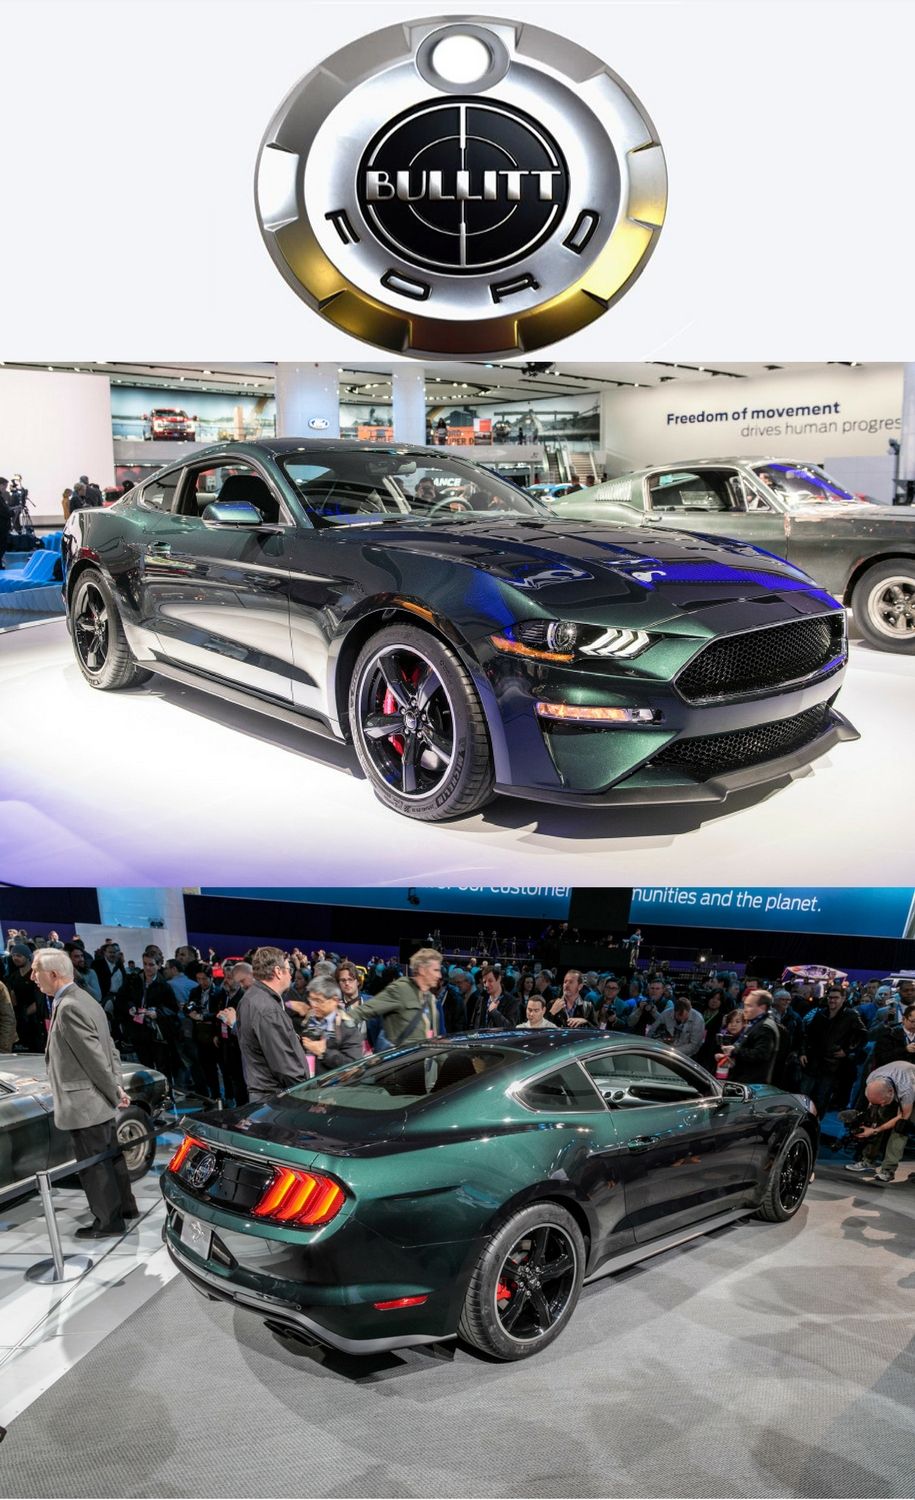 2019 Ford Mustang “Bullitt”